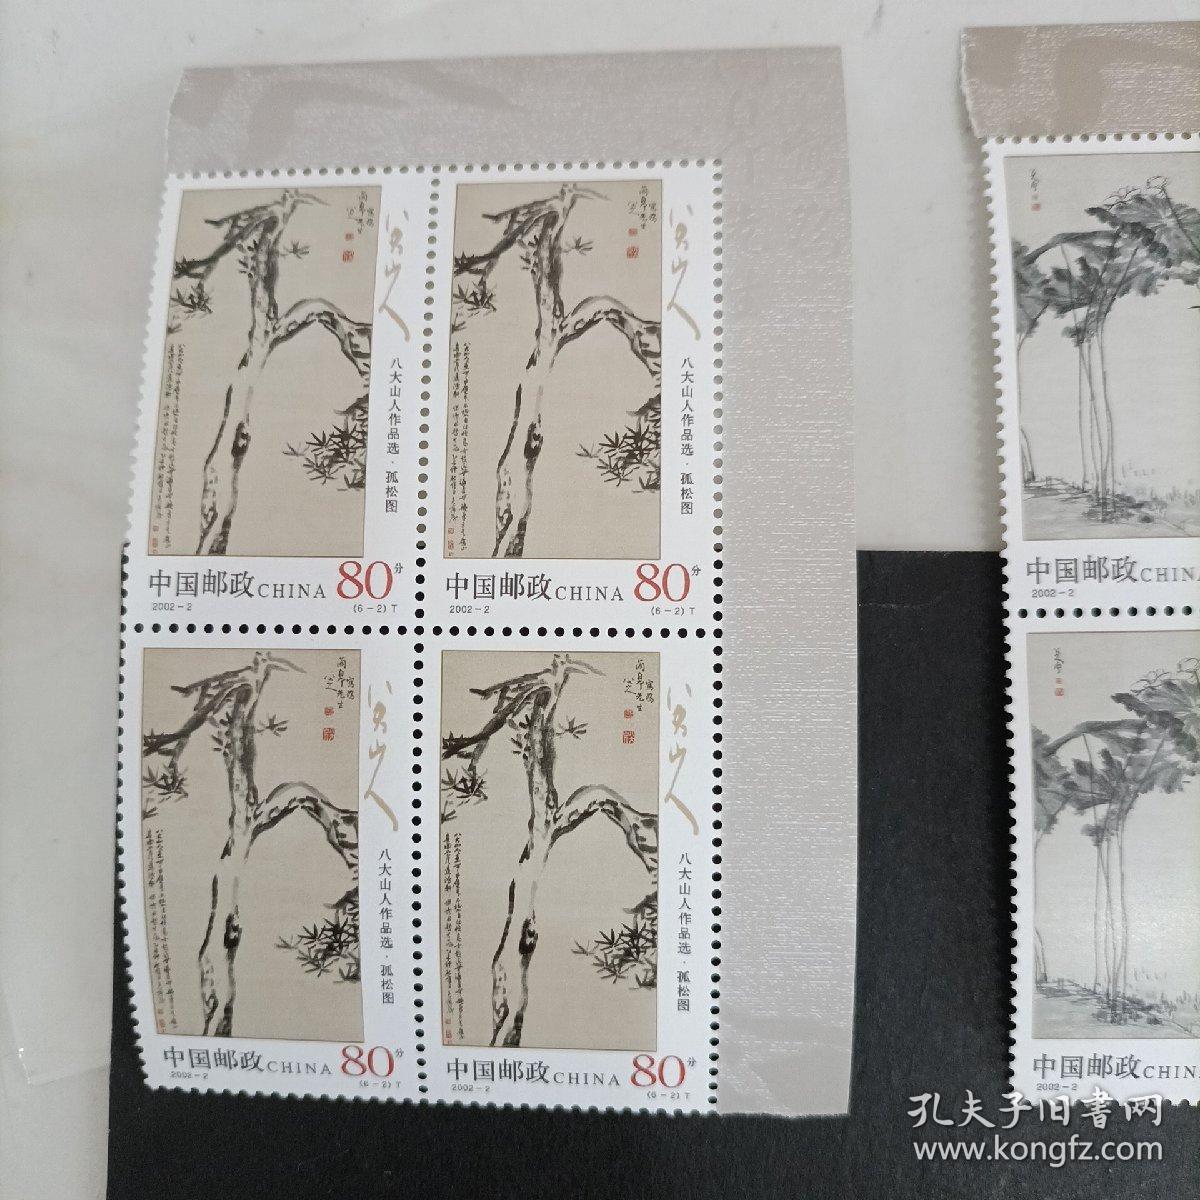 八大山人作品选邮票方联六枚全套共计24枚和售